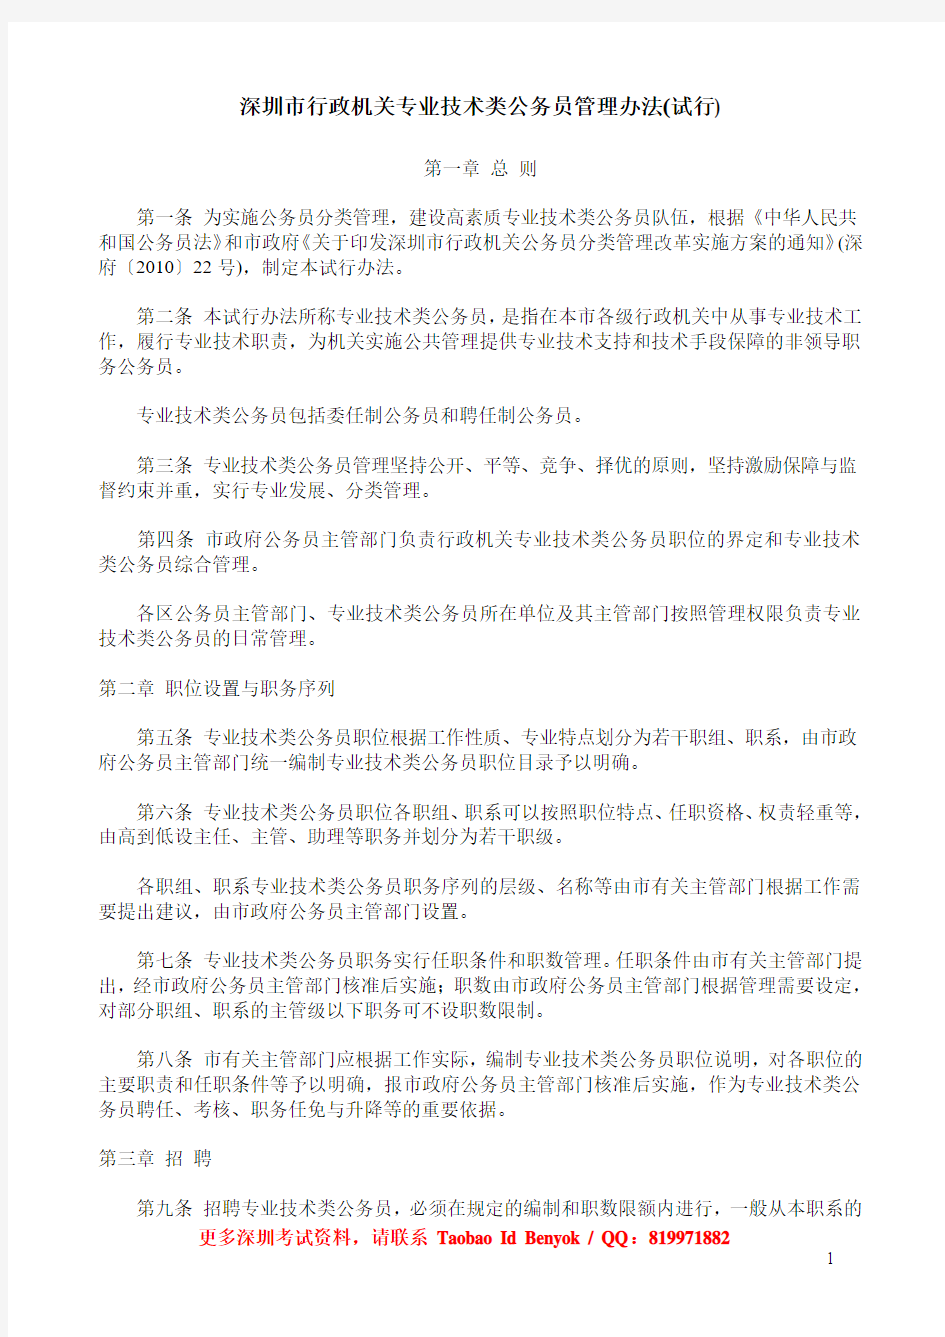 32深圳市行政机关专业技术类公务员管理办法(试行)